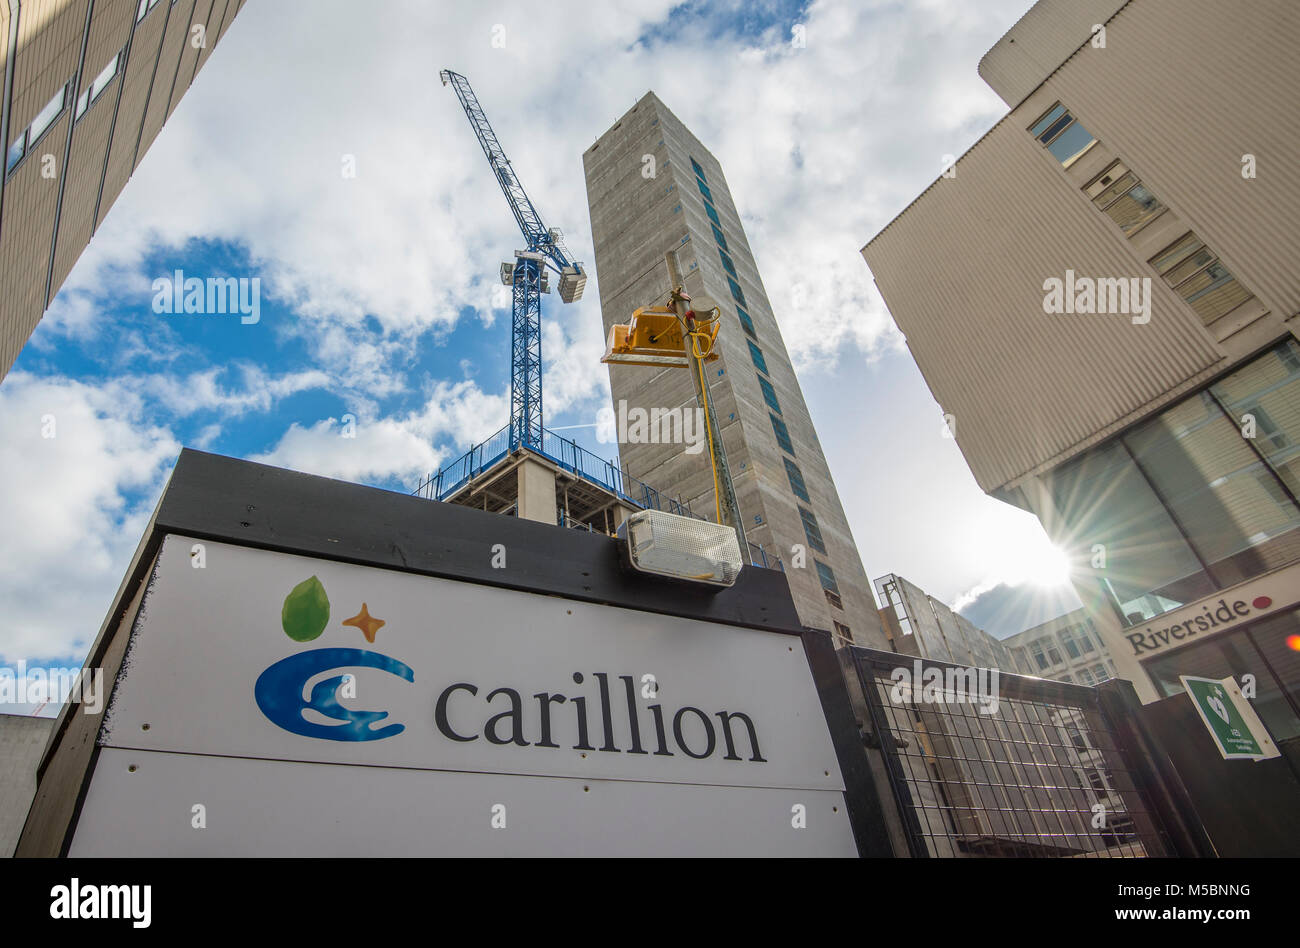 Carillion signe sur un chantier abandonné, Salford, Greater Manchester. Carillion plc est une multinationale britannique de gestion d'installations et constructi Banque D'Images